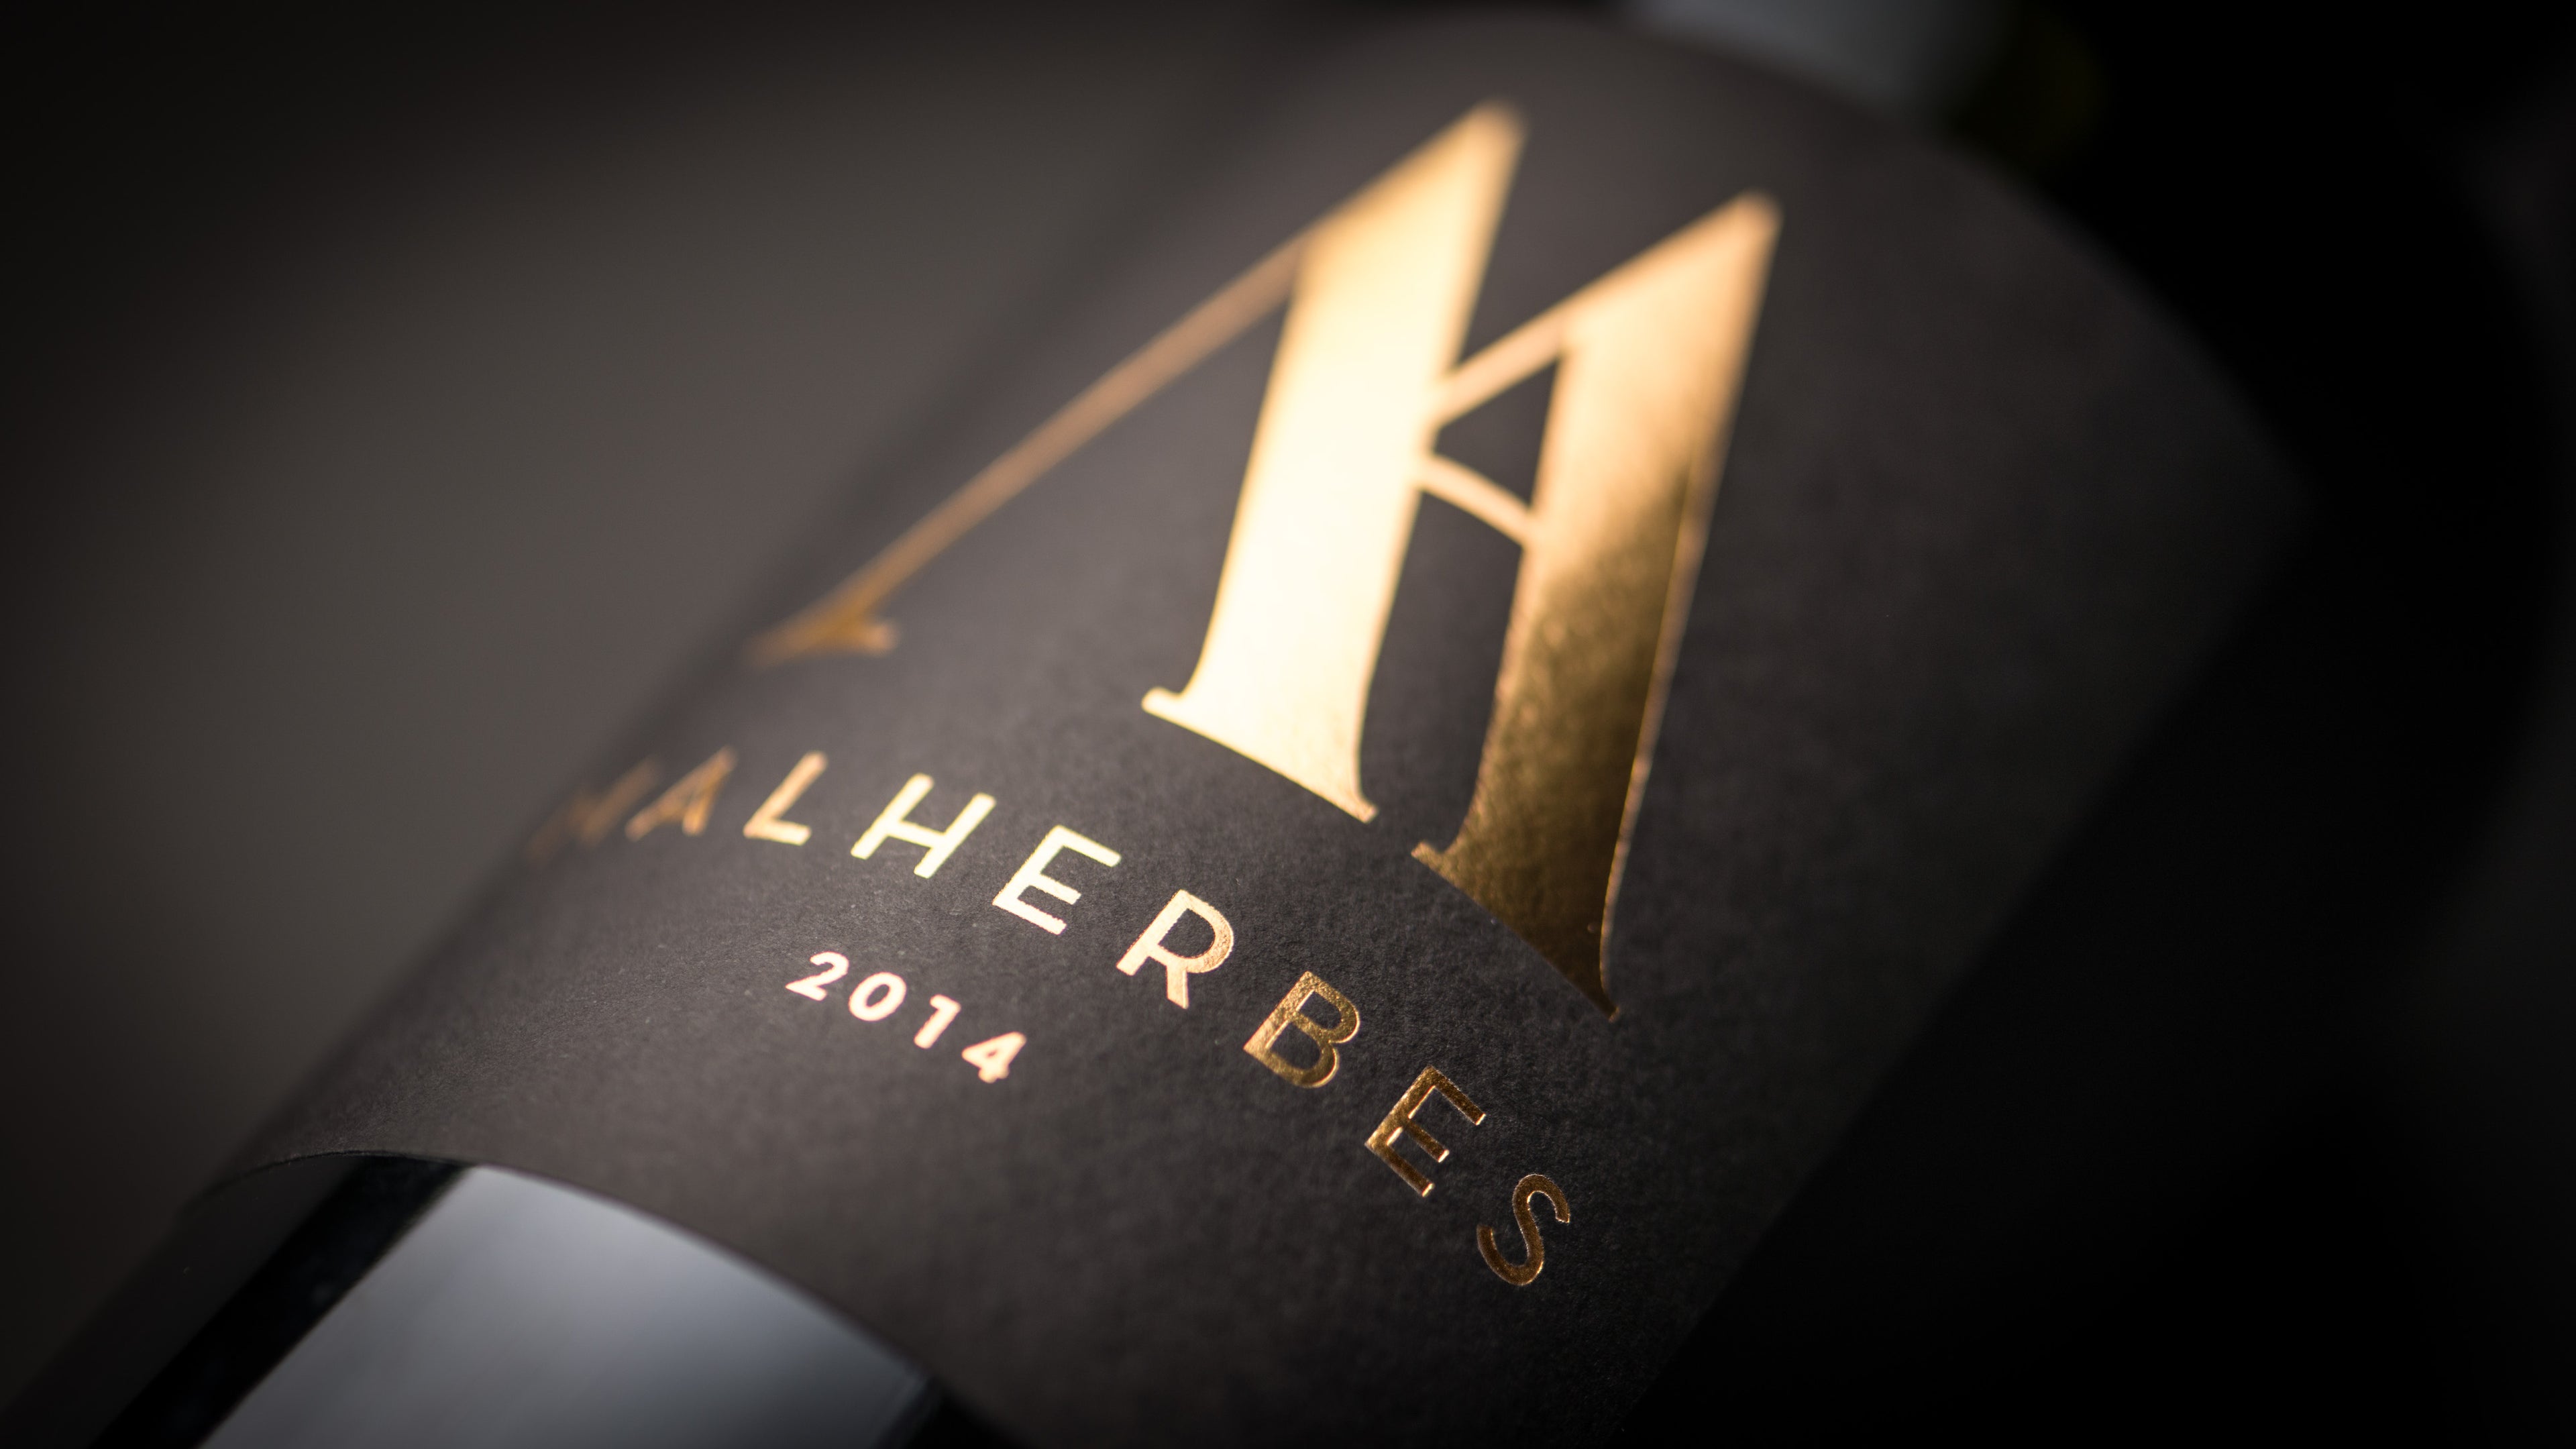 La bouteille de Malherbes Grand Vin Rouge 2014 pour dégustation